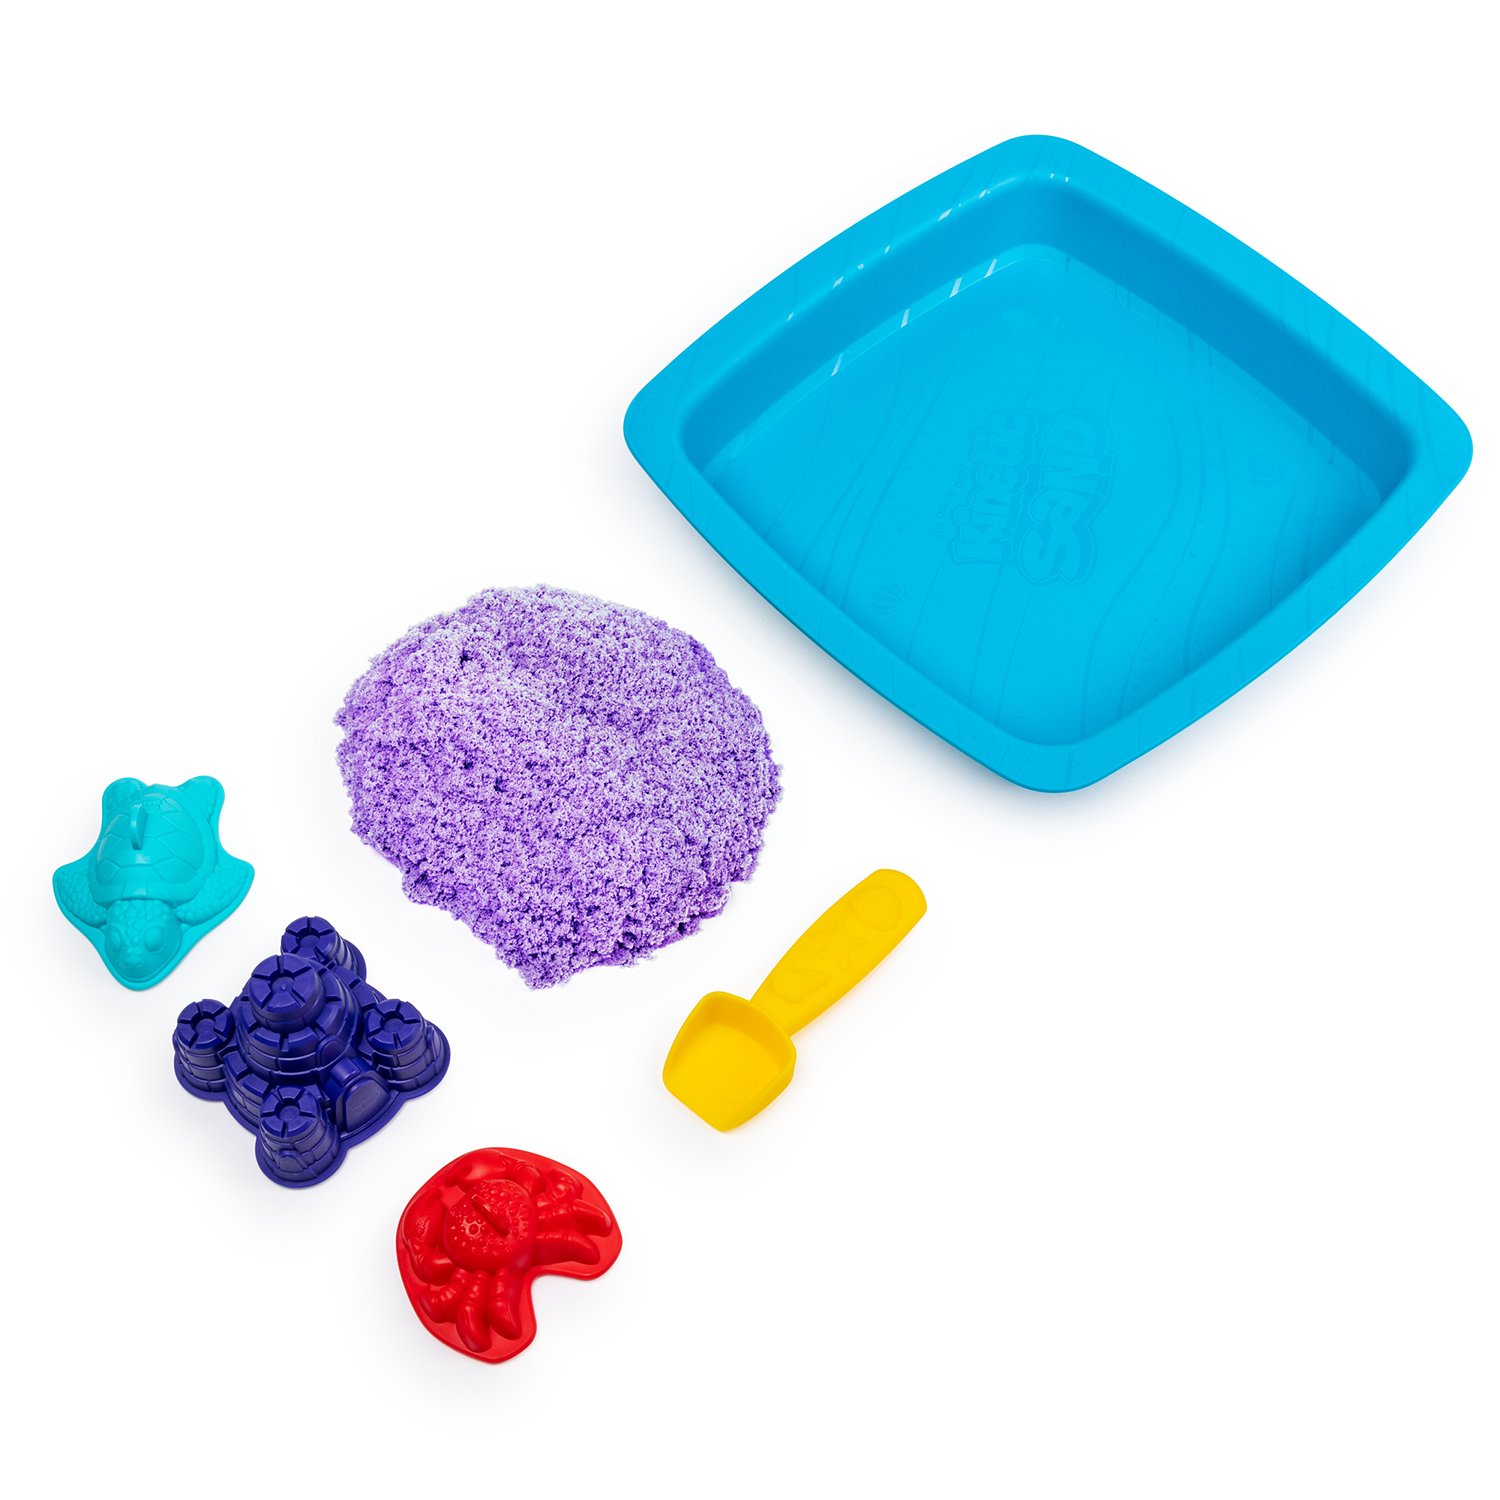 Песок кинетический Kinetic Sand с коробкой и инструментами 454г Purple 6028092